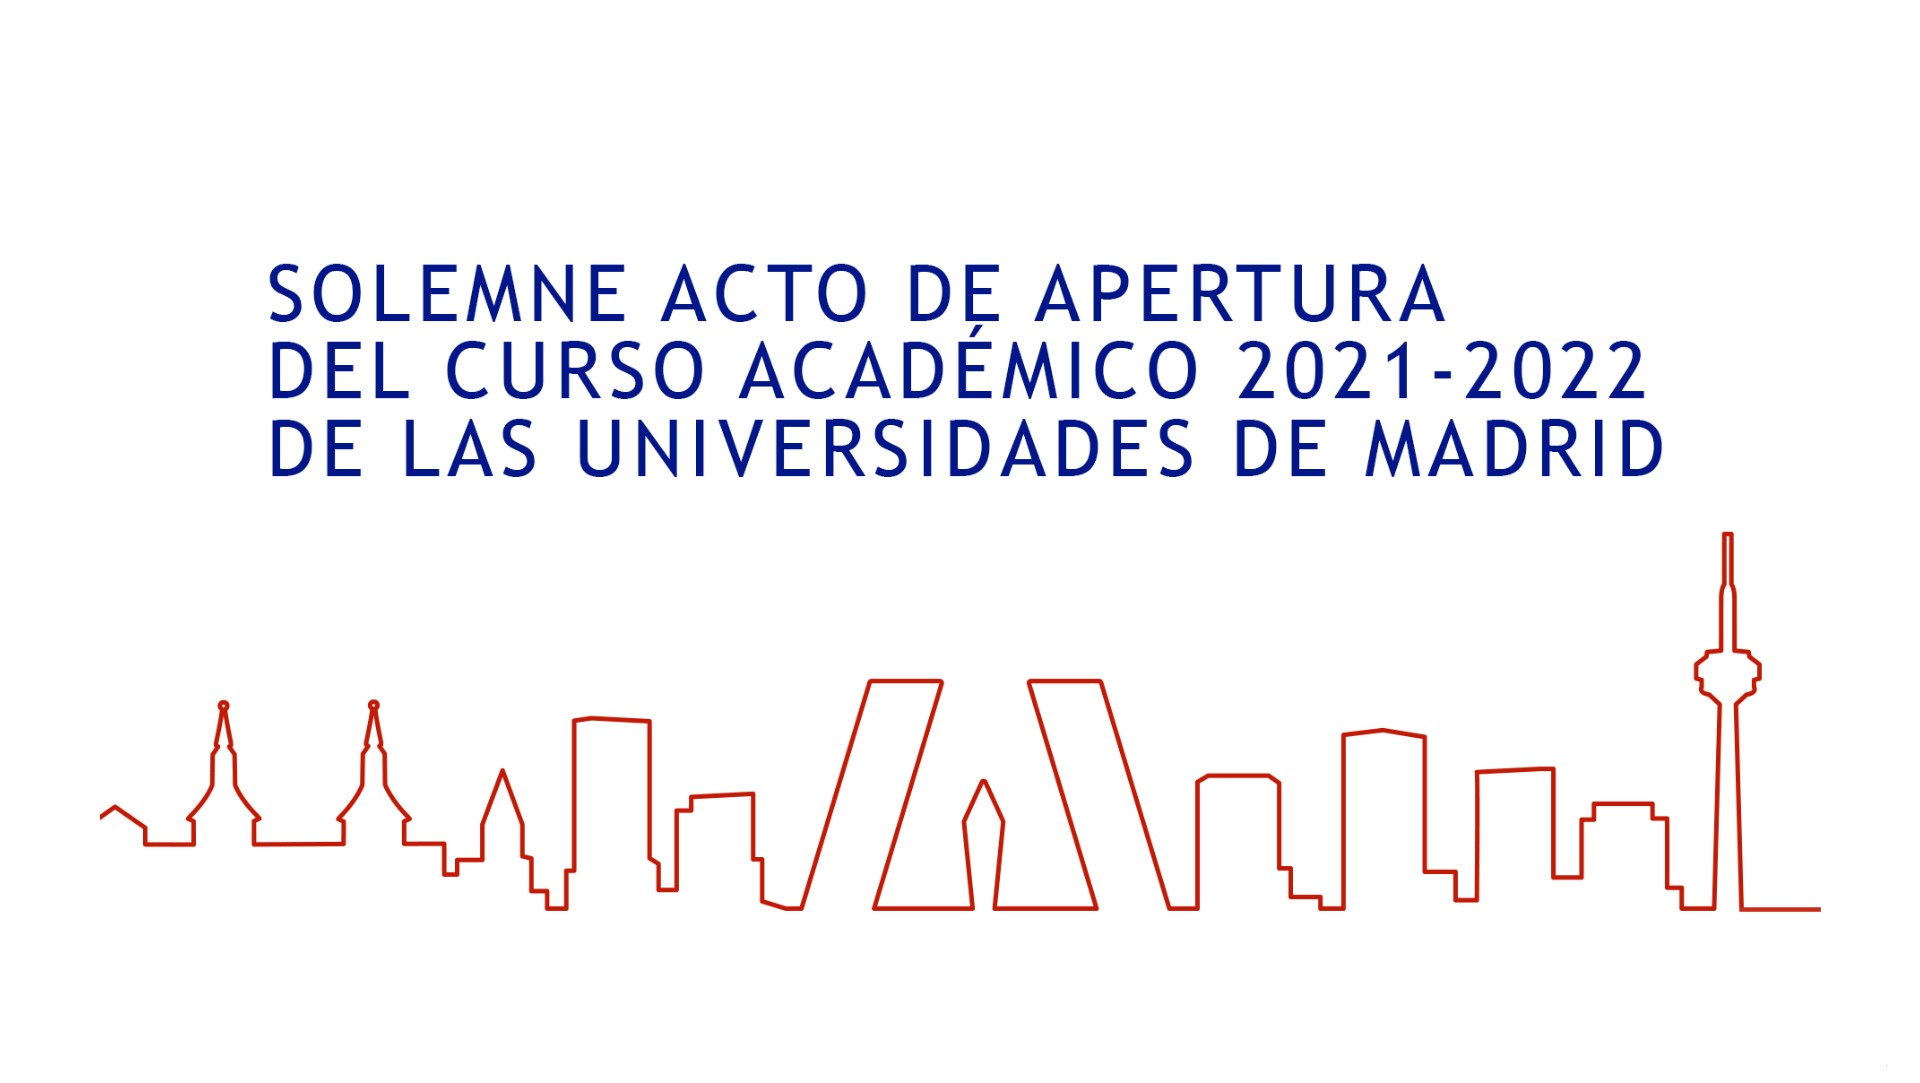 Solemne Acto de Apertura del Curso Académico 2021-2022 de las Universidades de Madrid